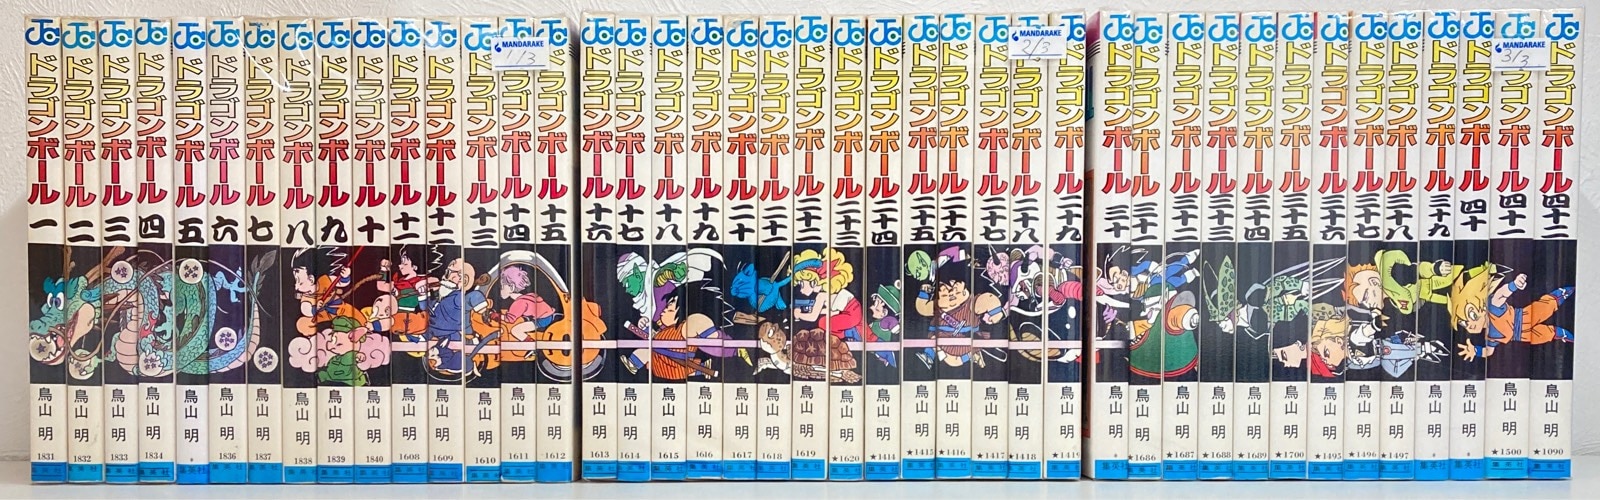 集英社 ジャンプコミックス 鳥山明 DRAGON BALL(旧装) 全42巻 再版